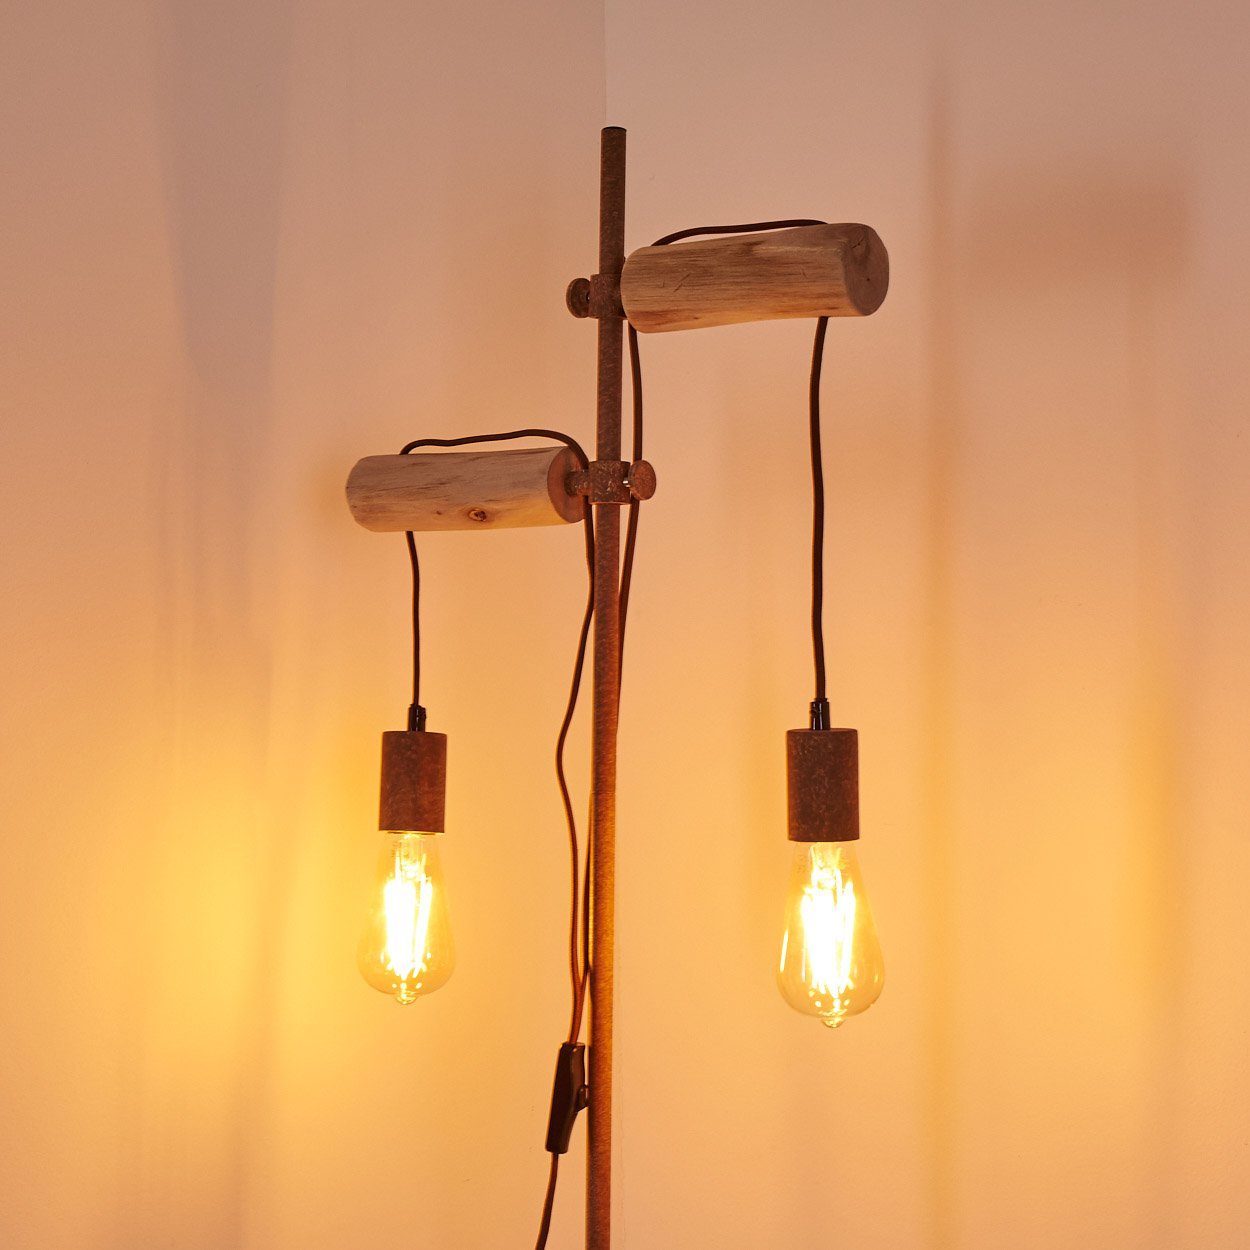 Lampe Boden Stehlampe Vintage Lese Steh Holz Leuchte Schlaf Stand Wohn Zimmer hofstein